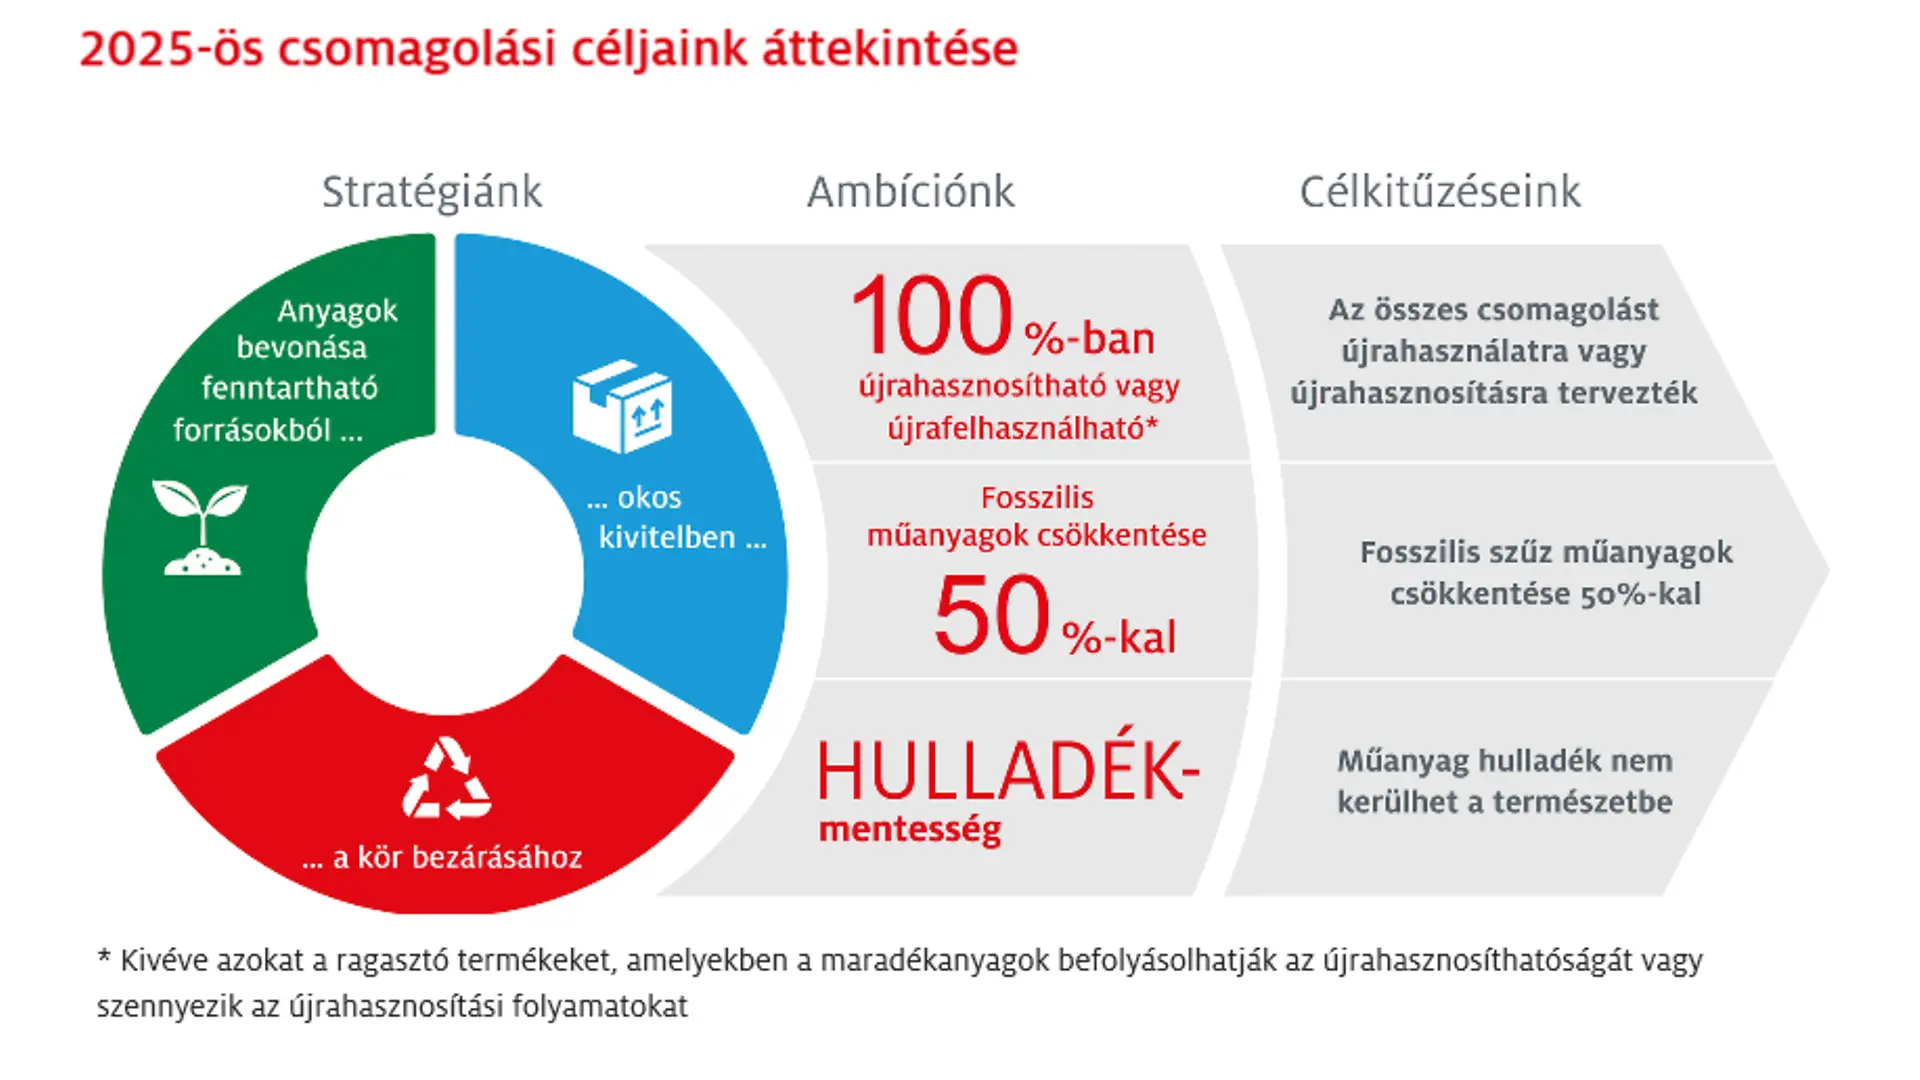 A Henkel 2025-re vonatkozó ambiciózus csomagolási céljai